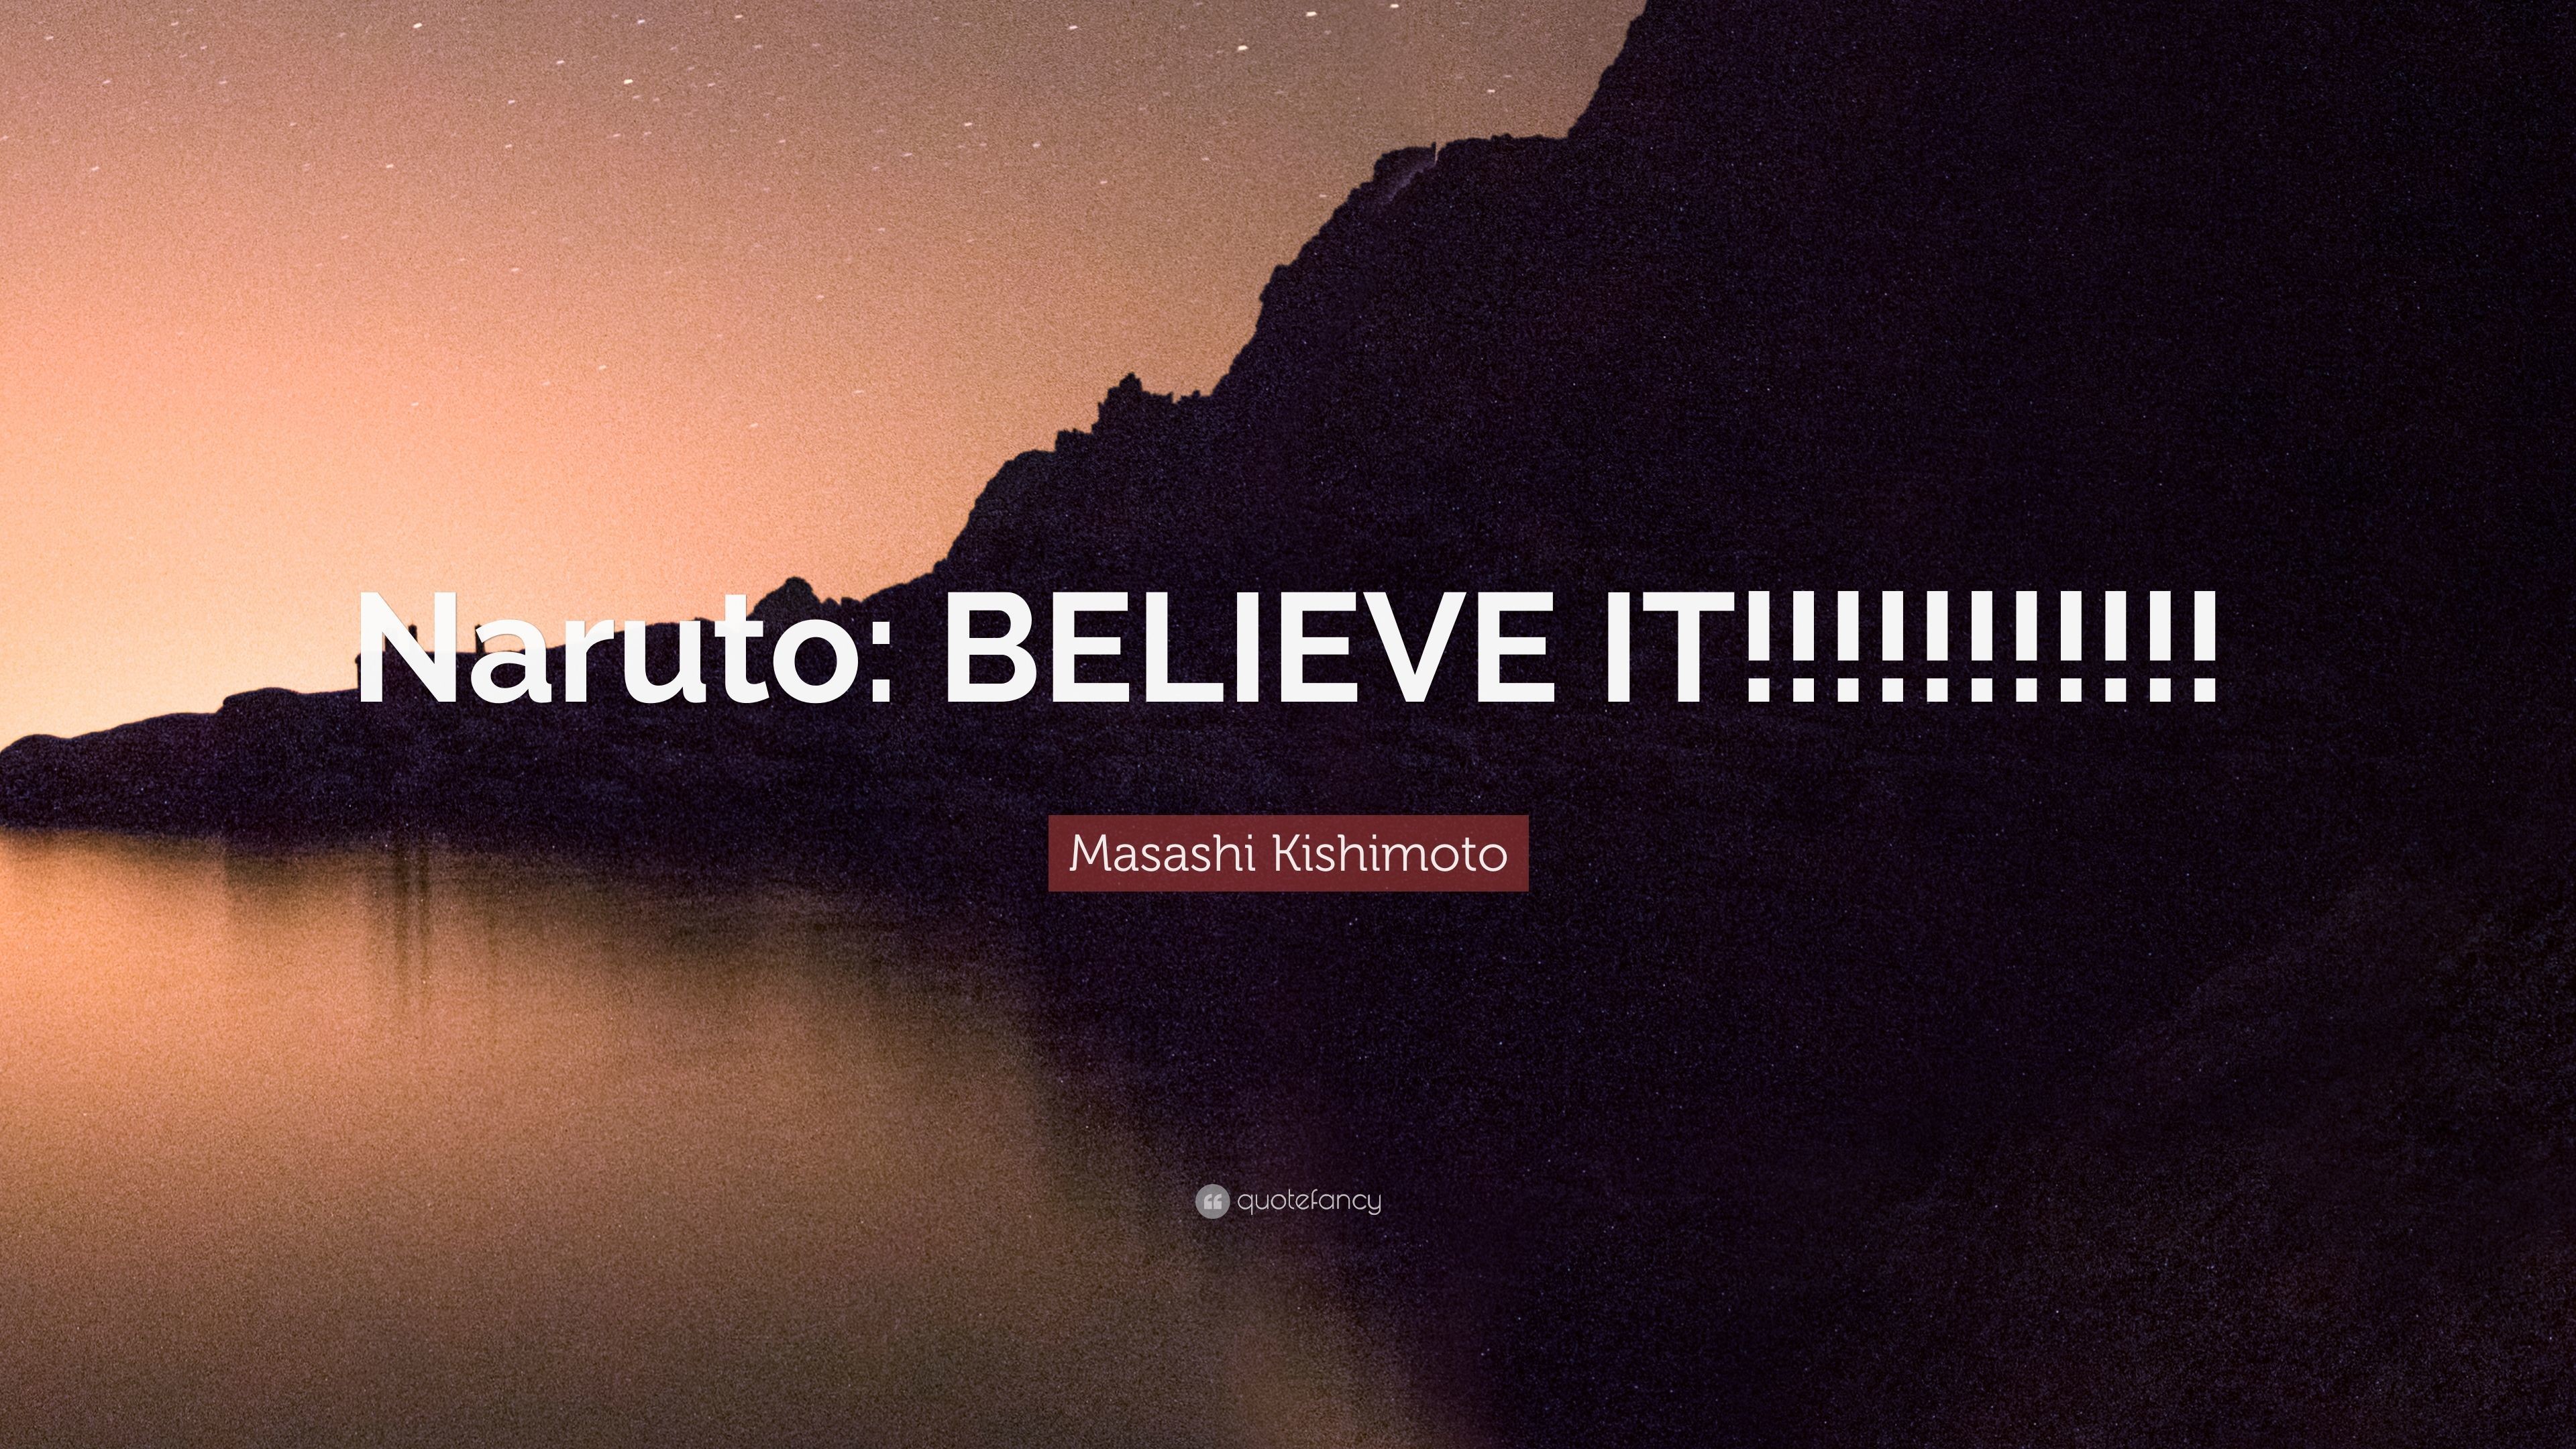 3840x2160 Masashi Kishimoto Quote: “Naruto: BELIEVE IT!